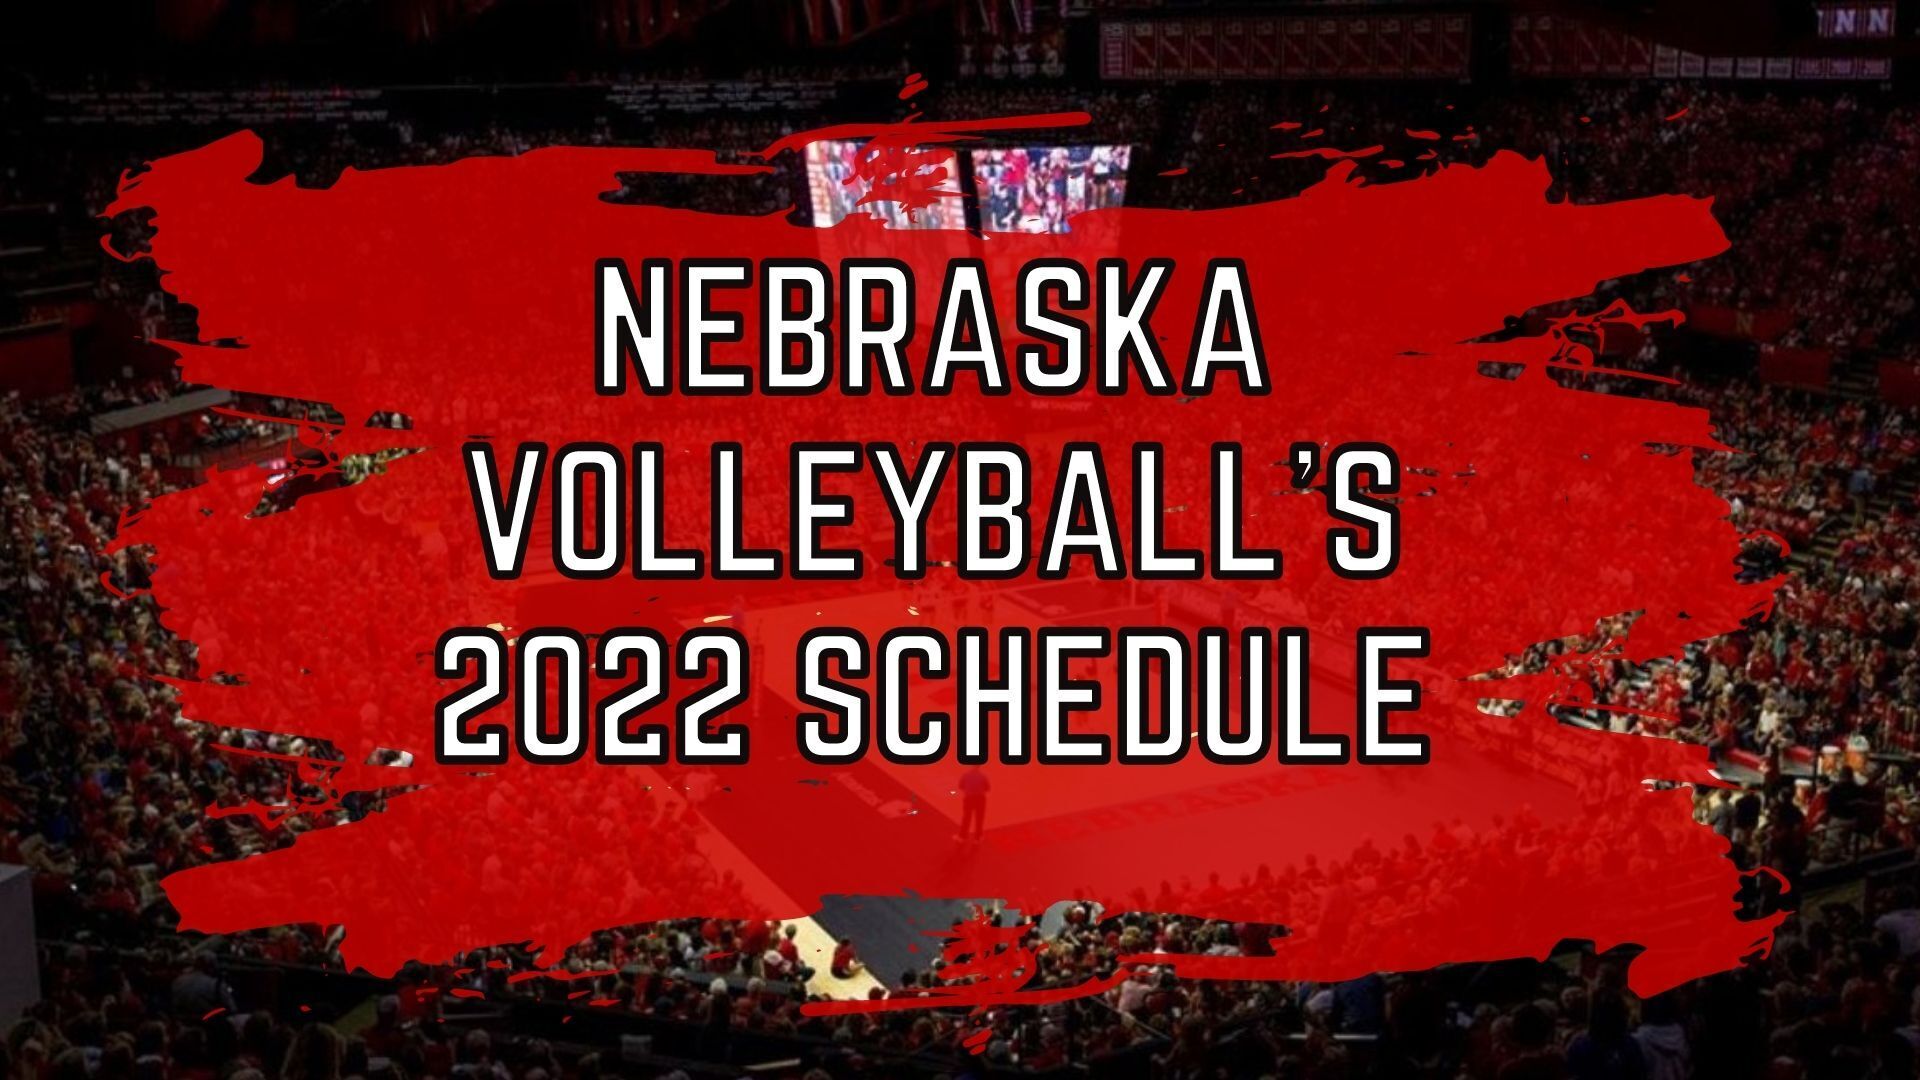 Nebraska volleyballs 2022 schedule